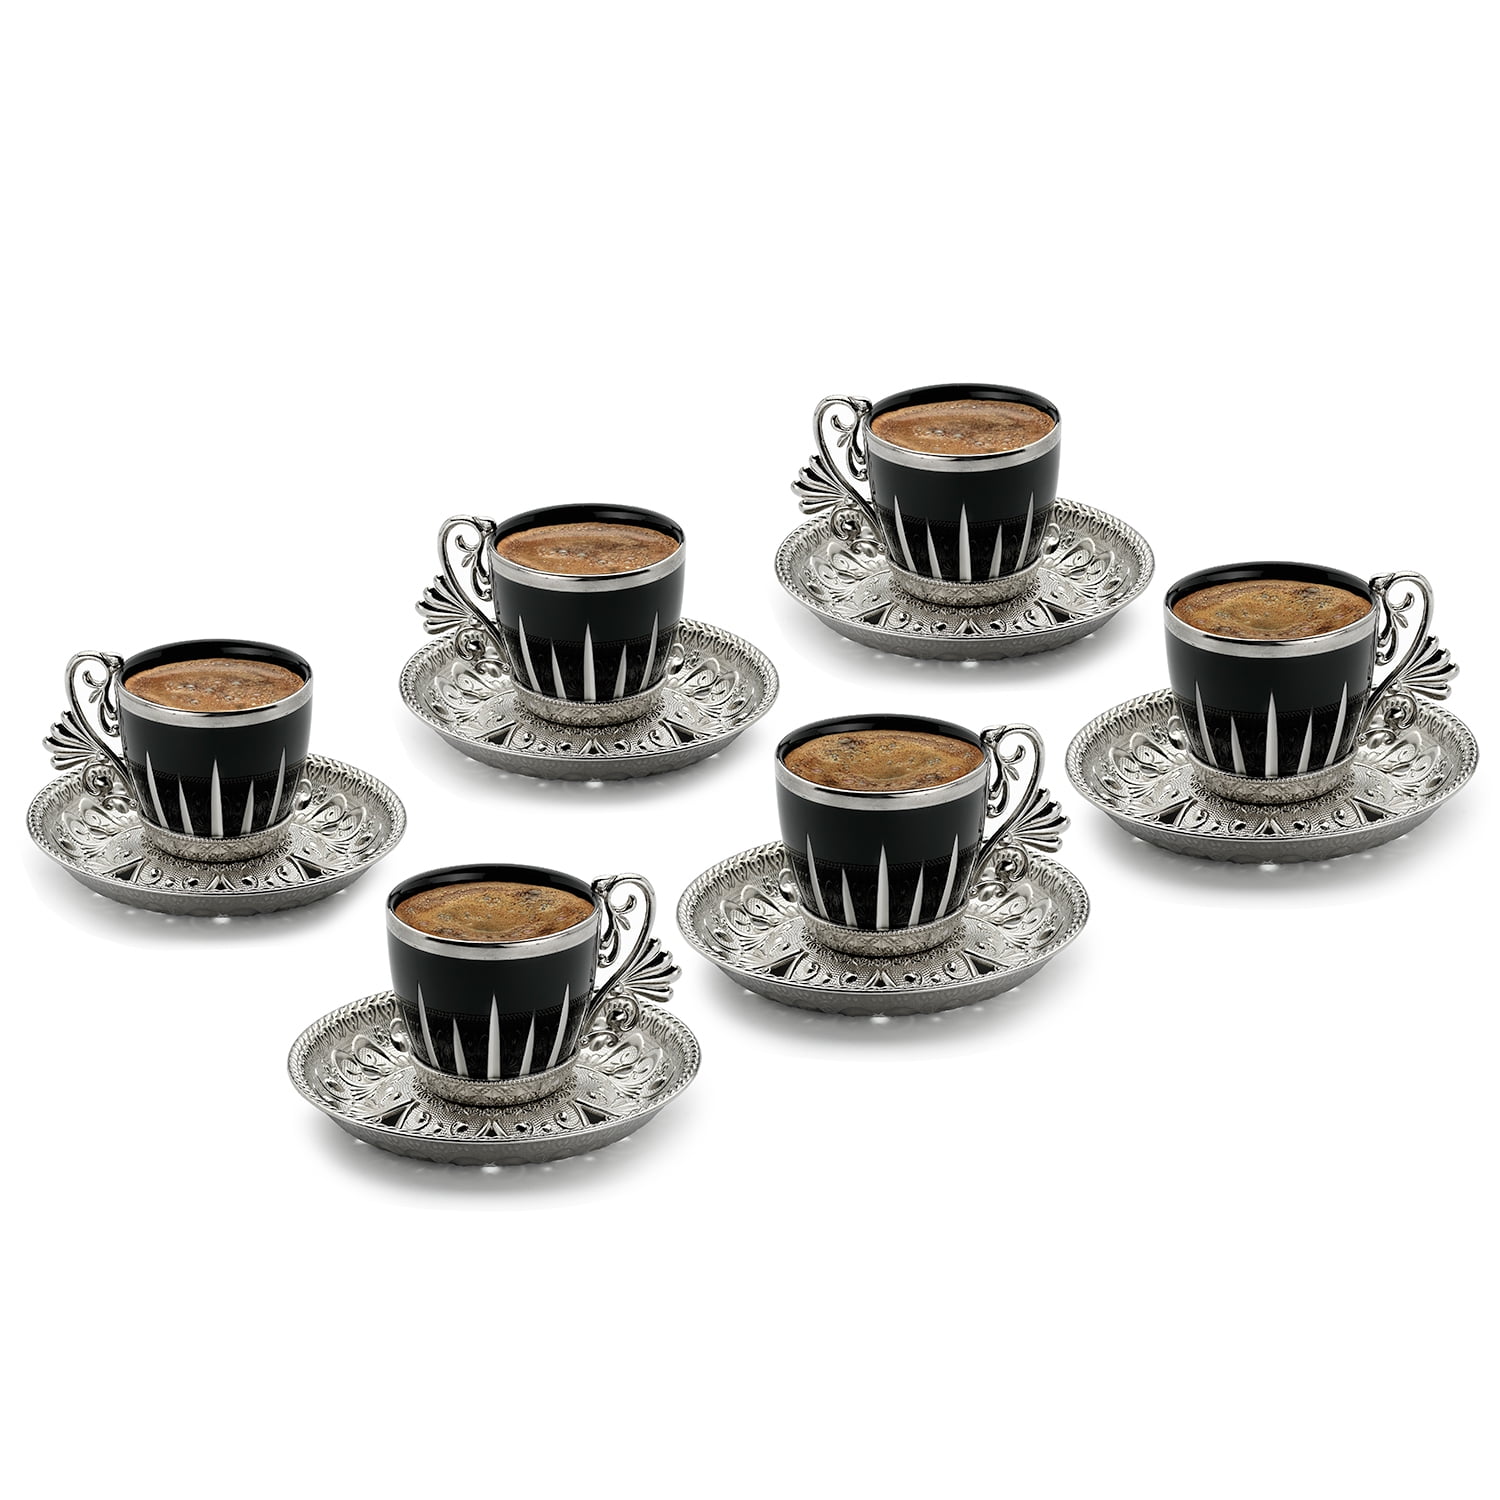 Turkish Unbreakable Tea Glasses Set Espresso Latte Cup Golden